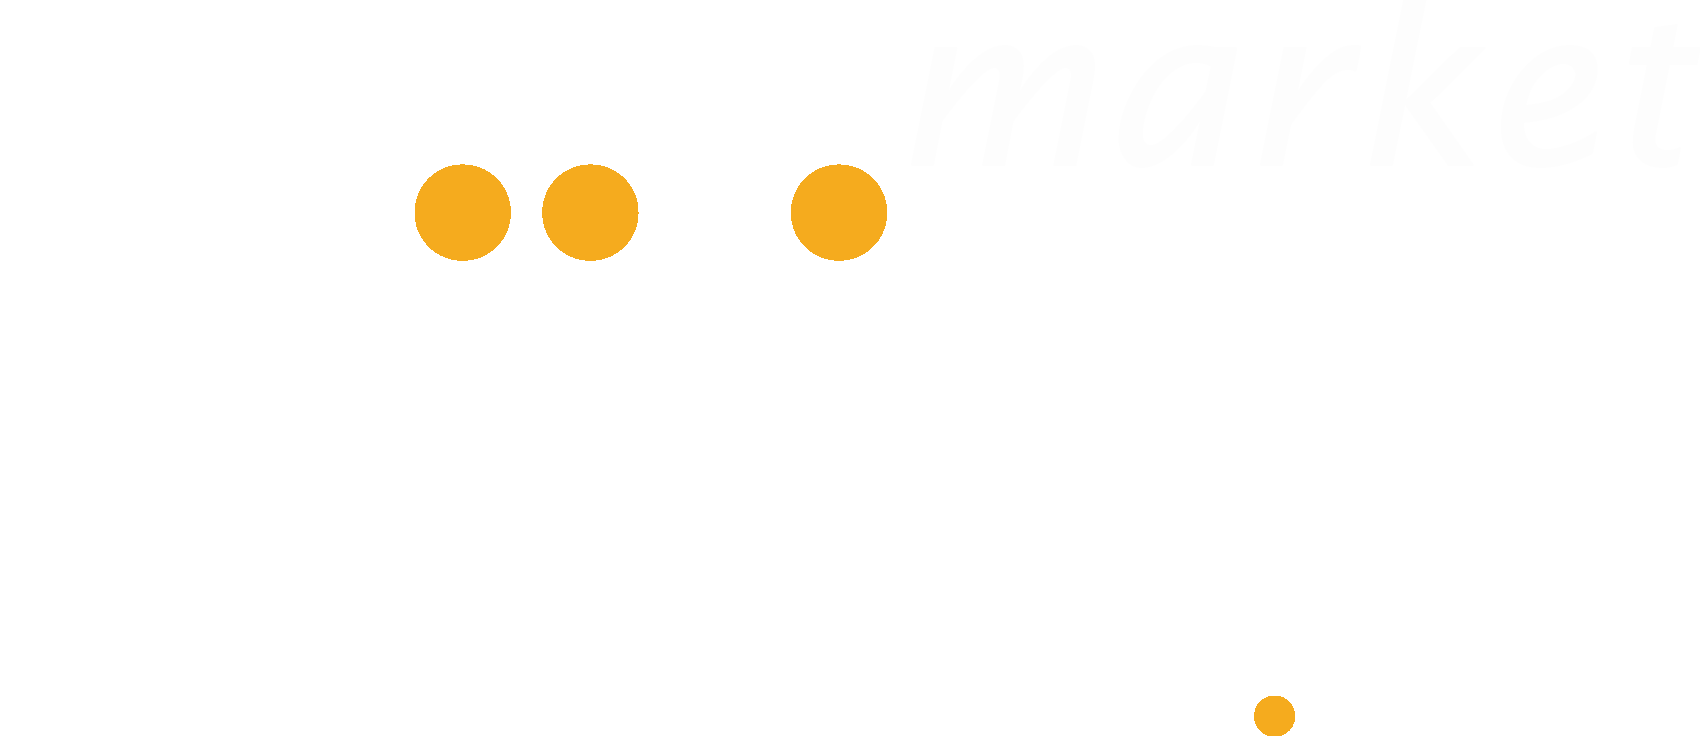 biiligo.com